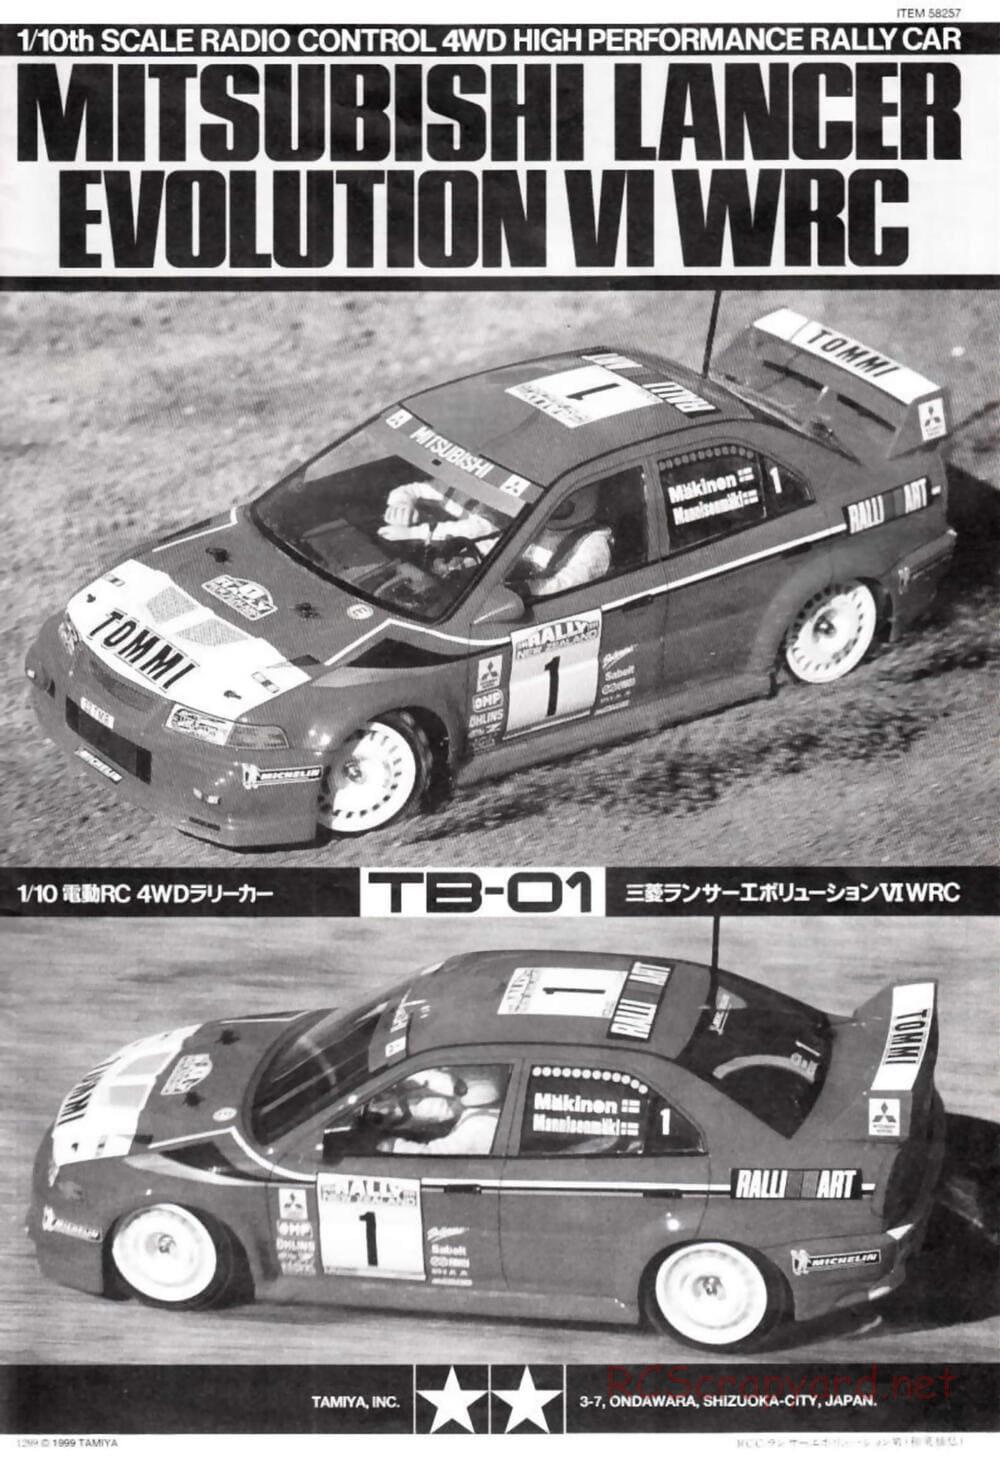 Tamiya - Mitsubishi Lancer Evolution VI WRC - TB-01 Chassis - Manual - Page 1